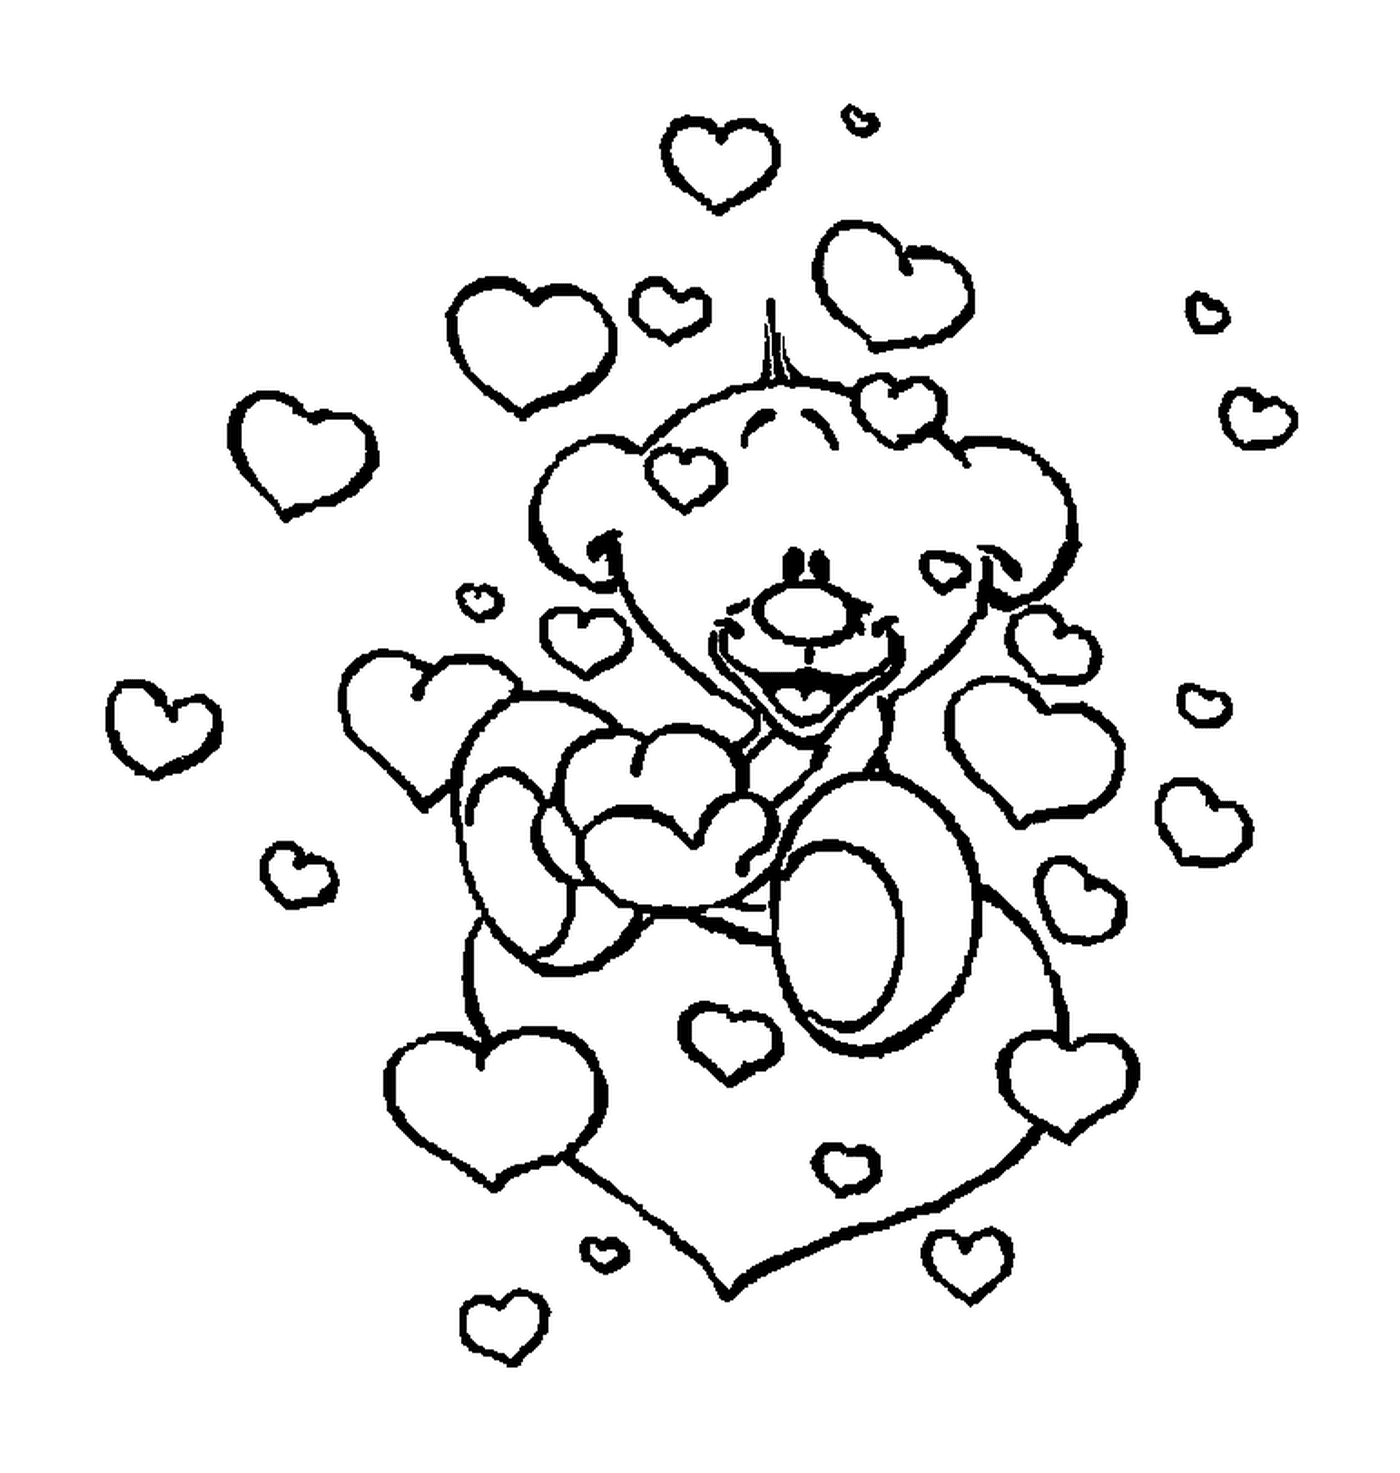  A teddy bear with hearts 